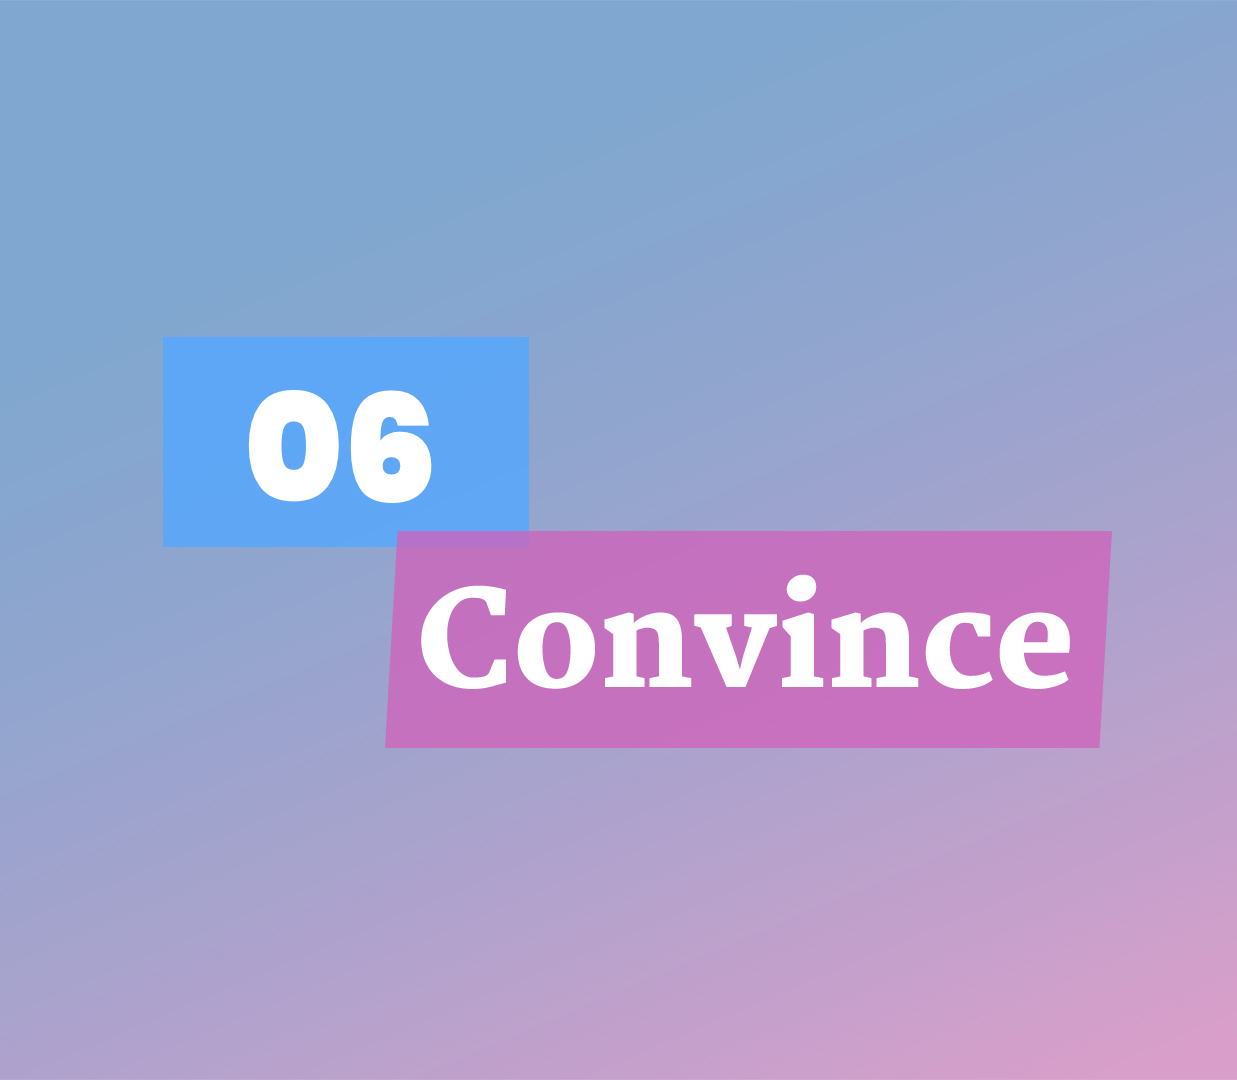 06 Convince